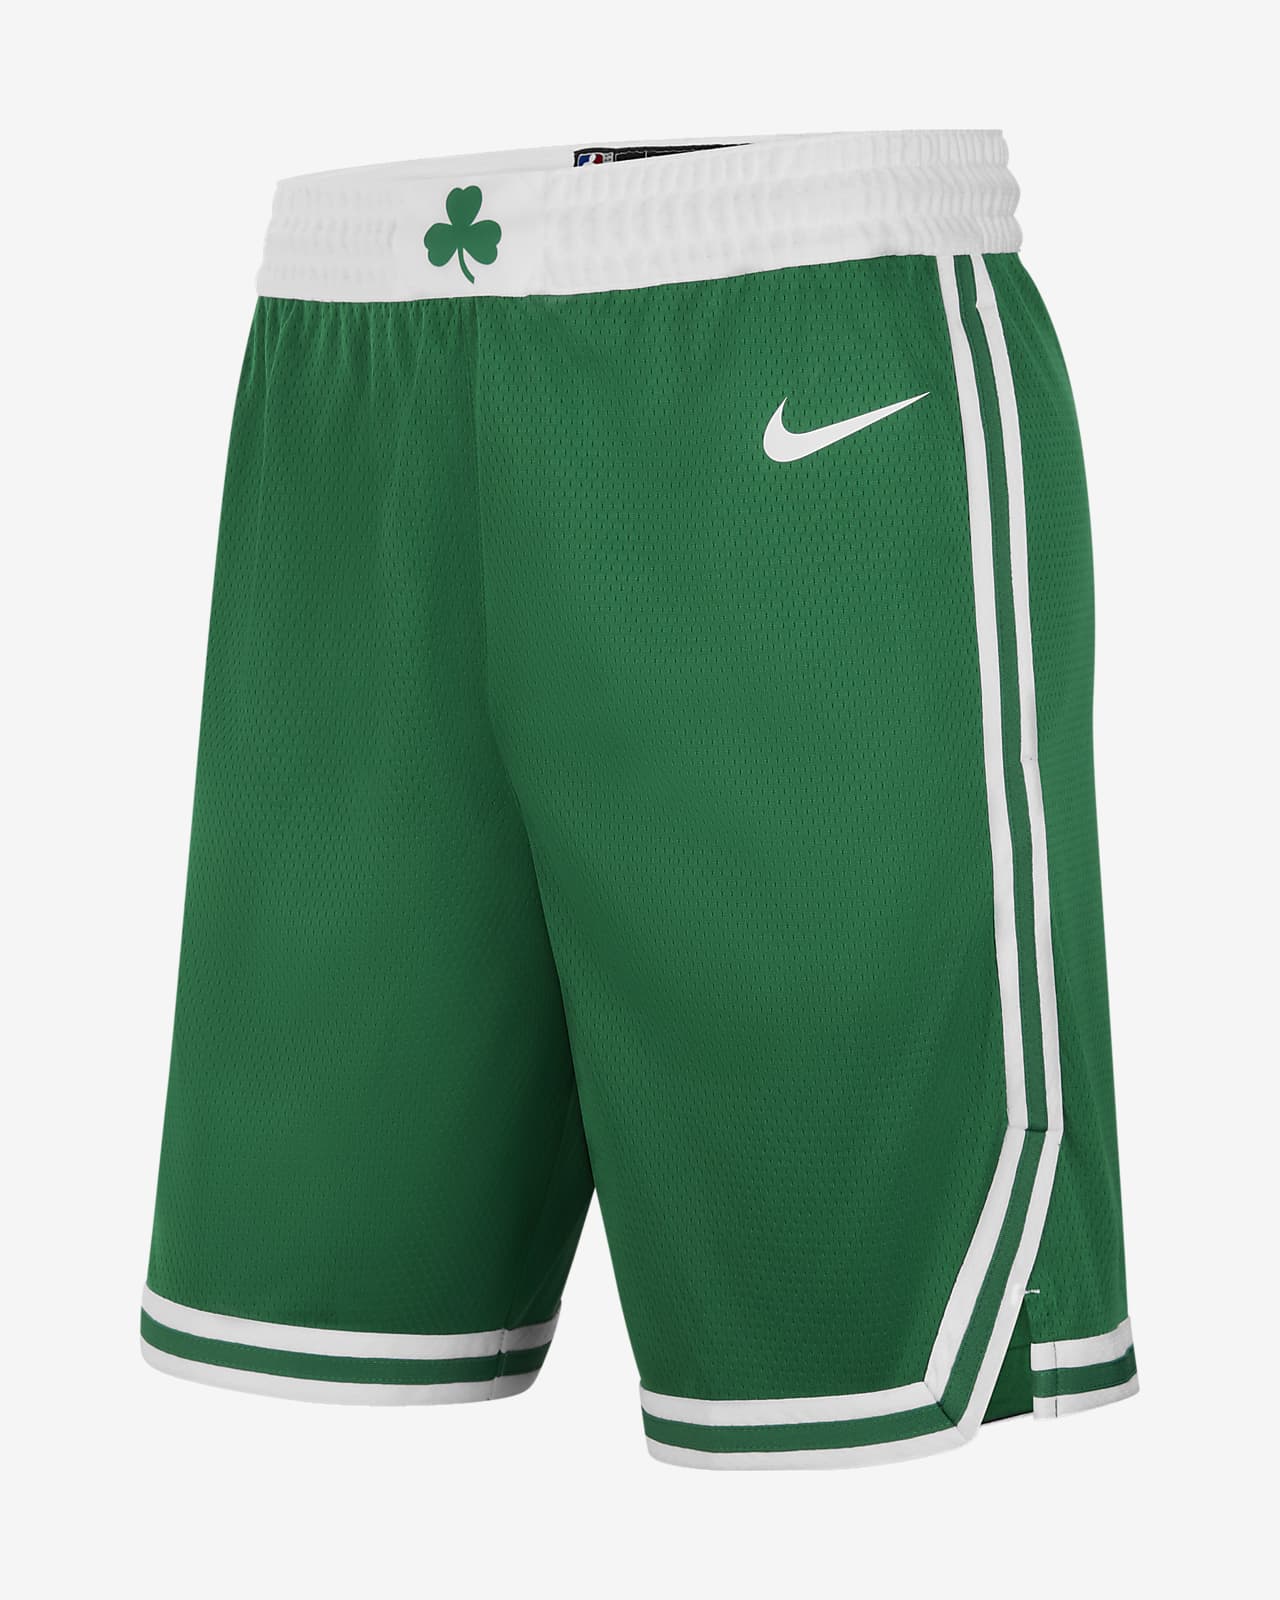 NBA Celtics Shorts – AthleticAntics